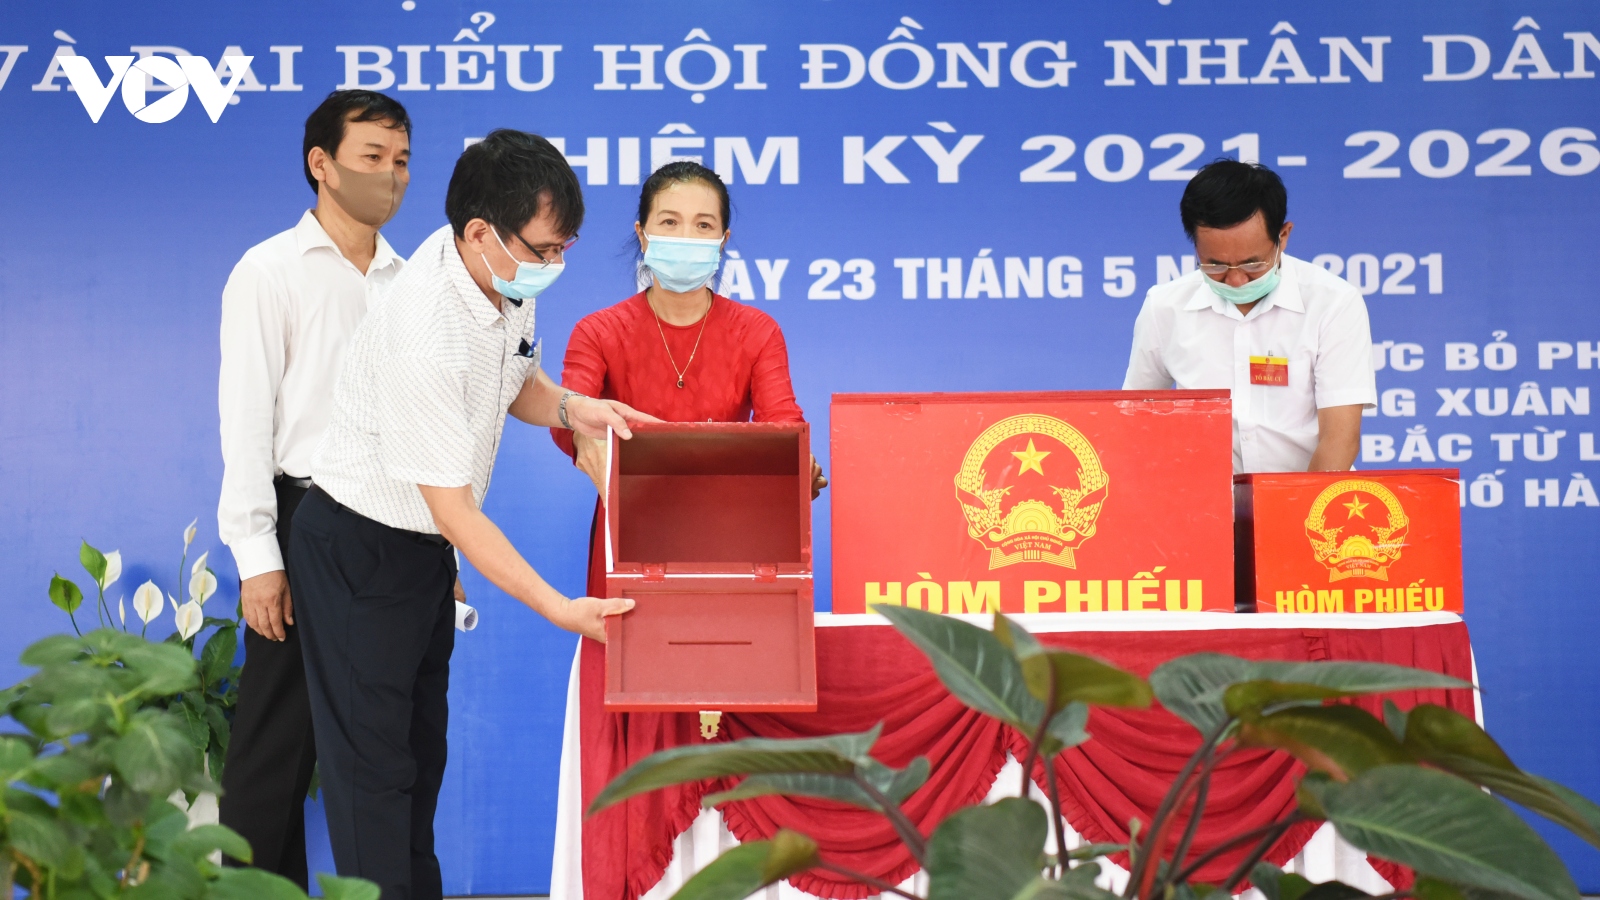 Vi phạm công tác bầu cử, Hà Nội phải tổ chức bầu cử lại tại 2 đơn vị bầu cử